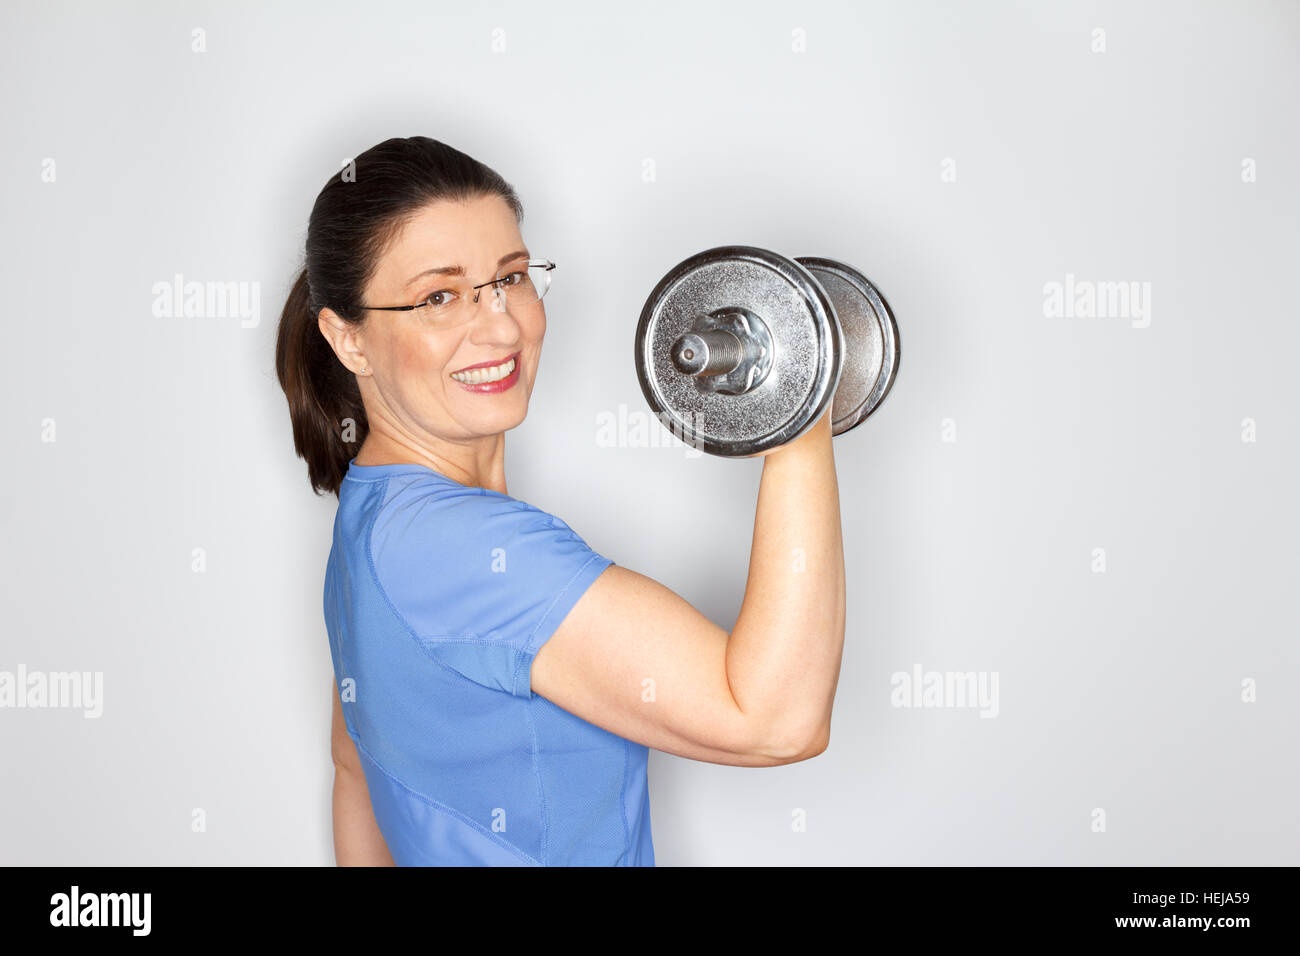 Glücklich und stolz mittlere gealterte Frau mit Brille und im blauen T-shirt heben Gewichte, hellgrauen Hintergrund, Textfreiraum, Exemplar Stockfoto